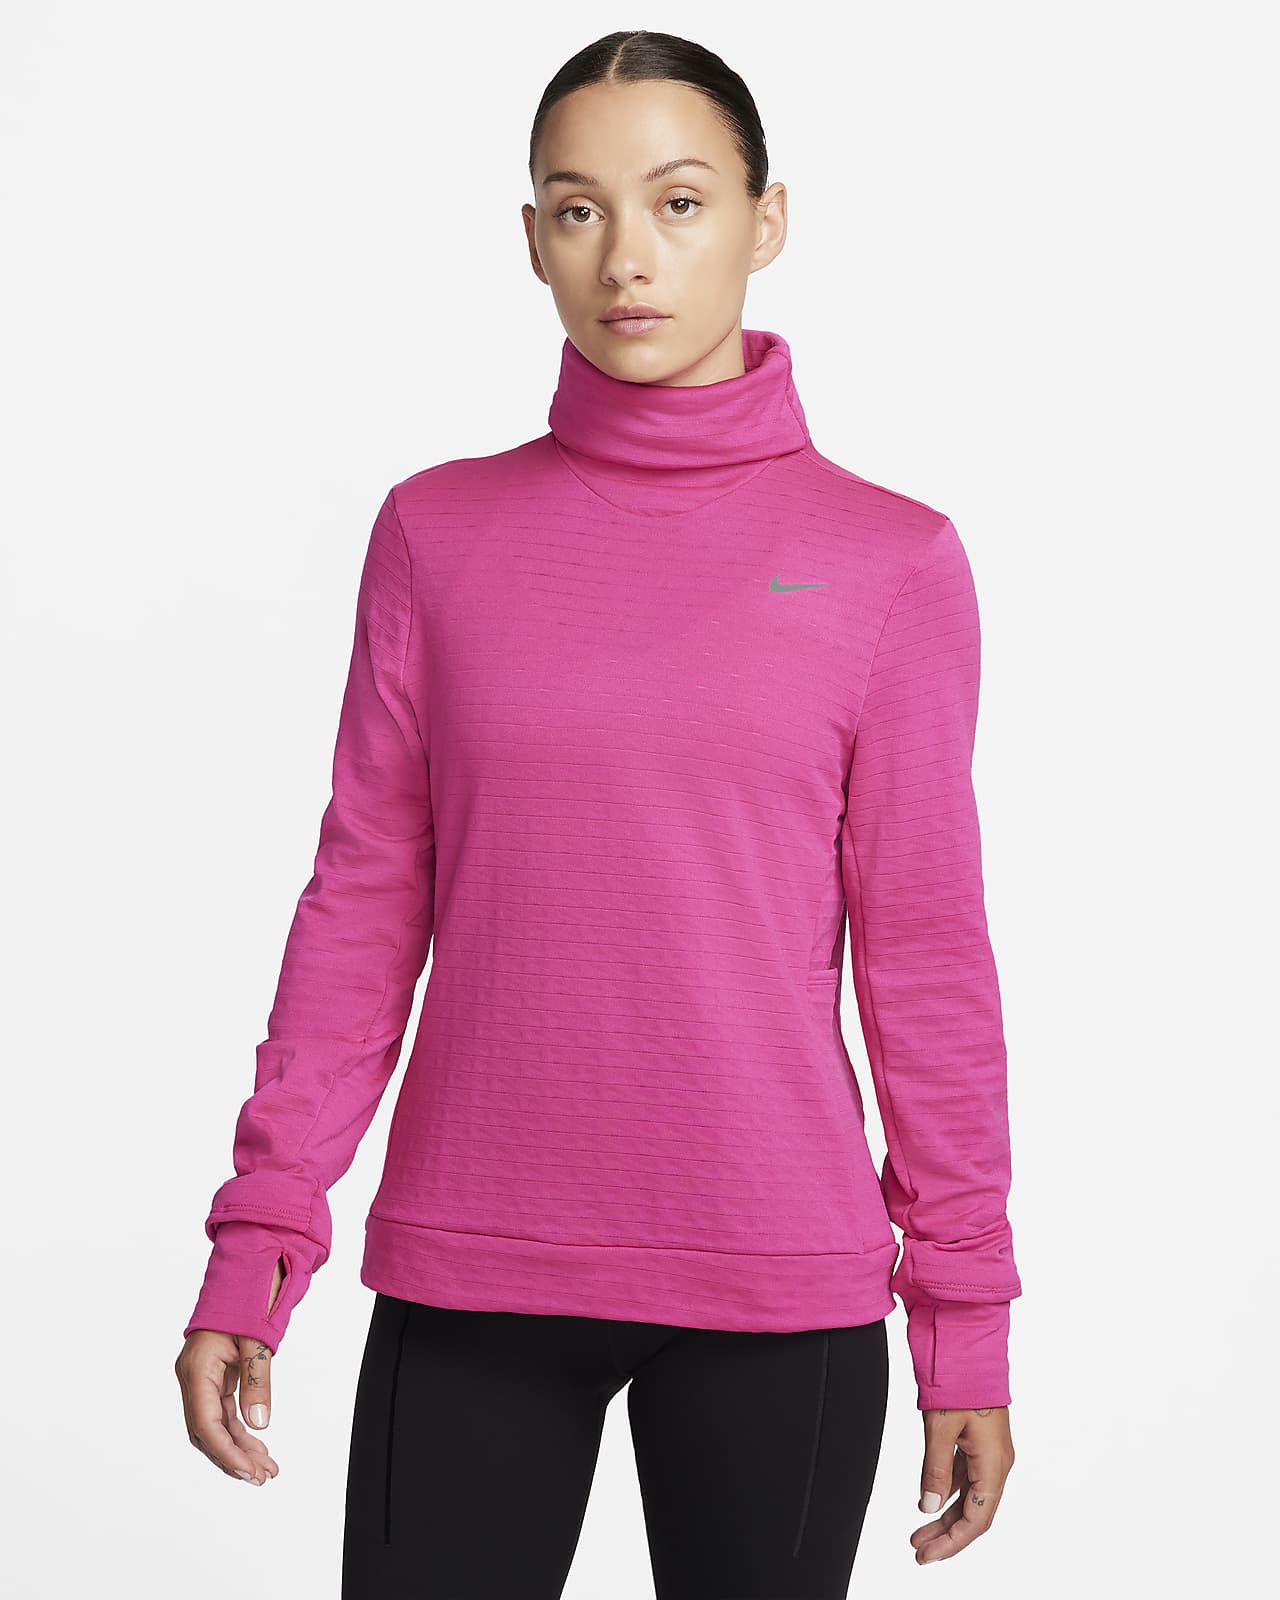 Γυναικεία μπλούζα ζιβάγκο για τρέξιμο Nike Therma-FIT Swift